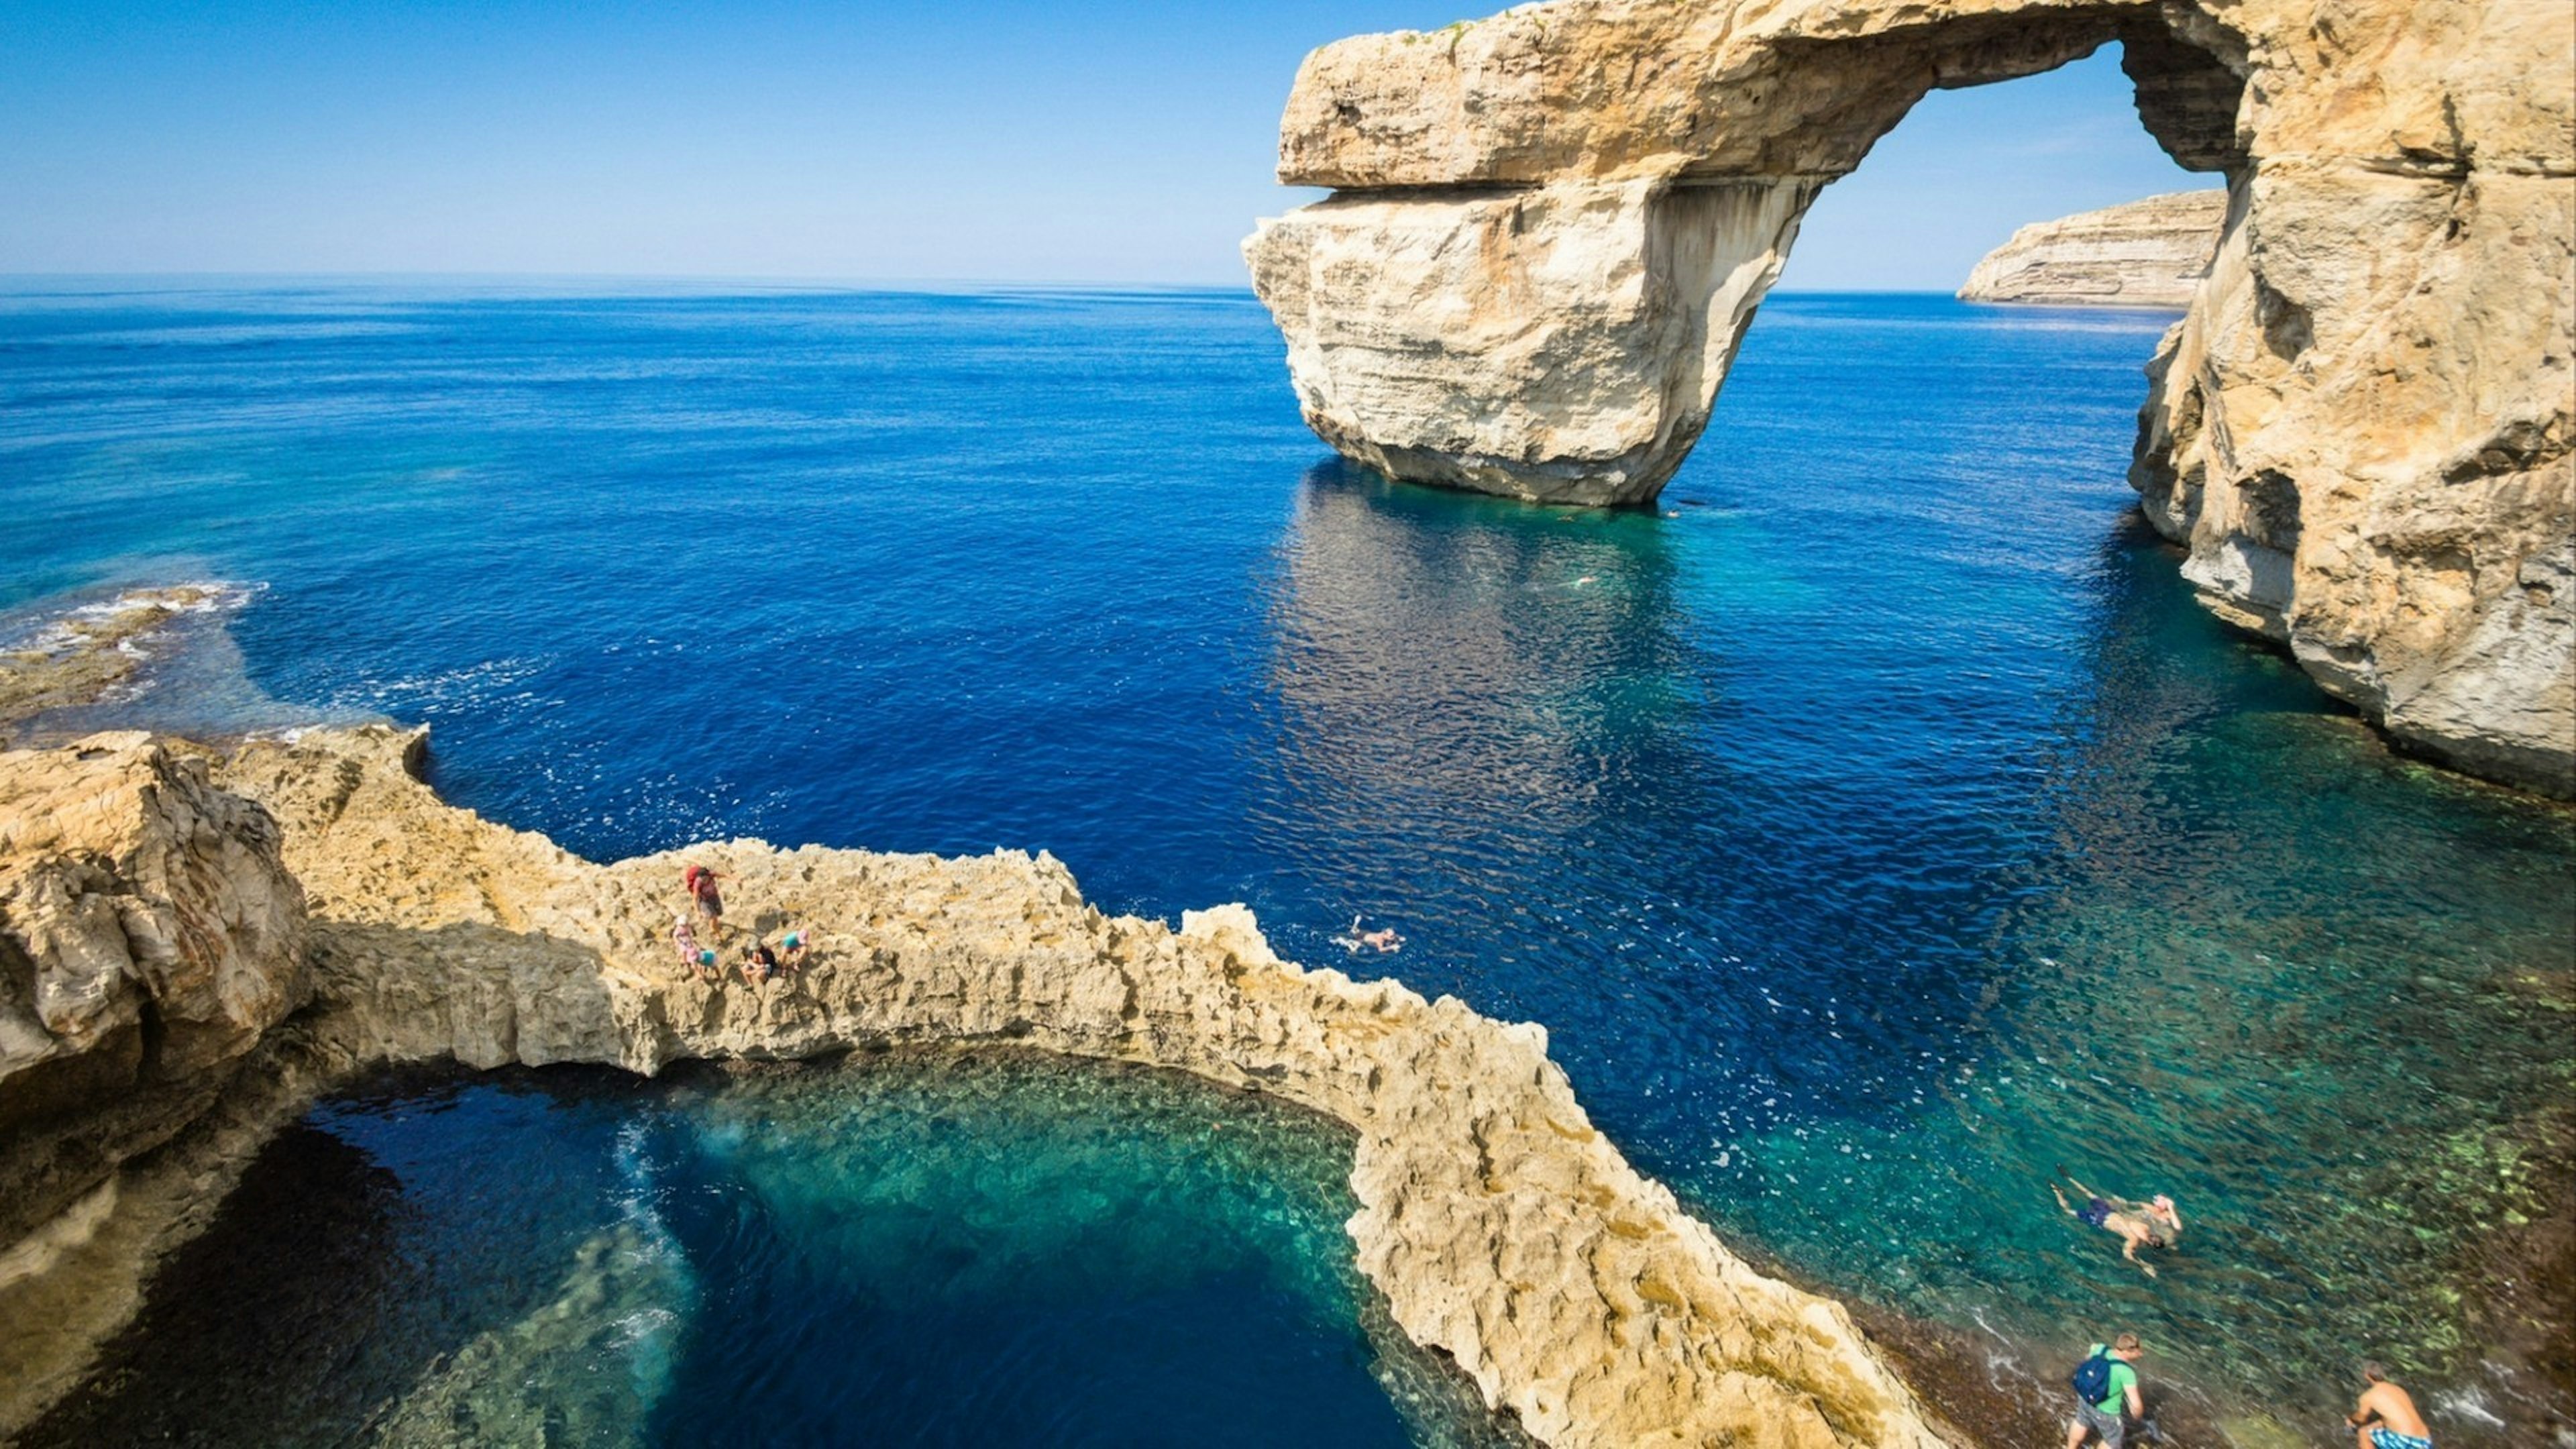 The Azure Window in Gozo island - Mediterranean nature wonder in beautiful Malta